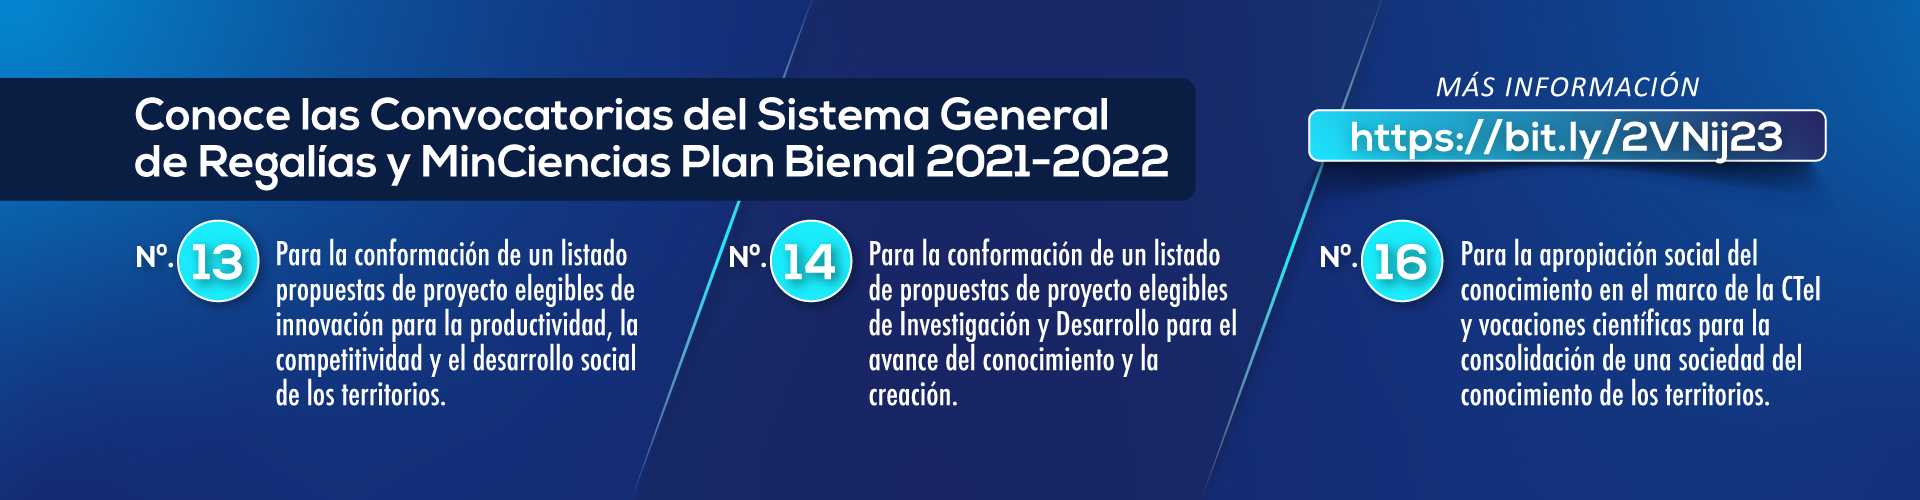 Conoce las convocatorias del Sistema General de Regalías y MinCiencias Plan Bienal 2021-2022